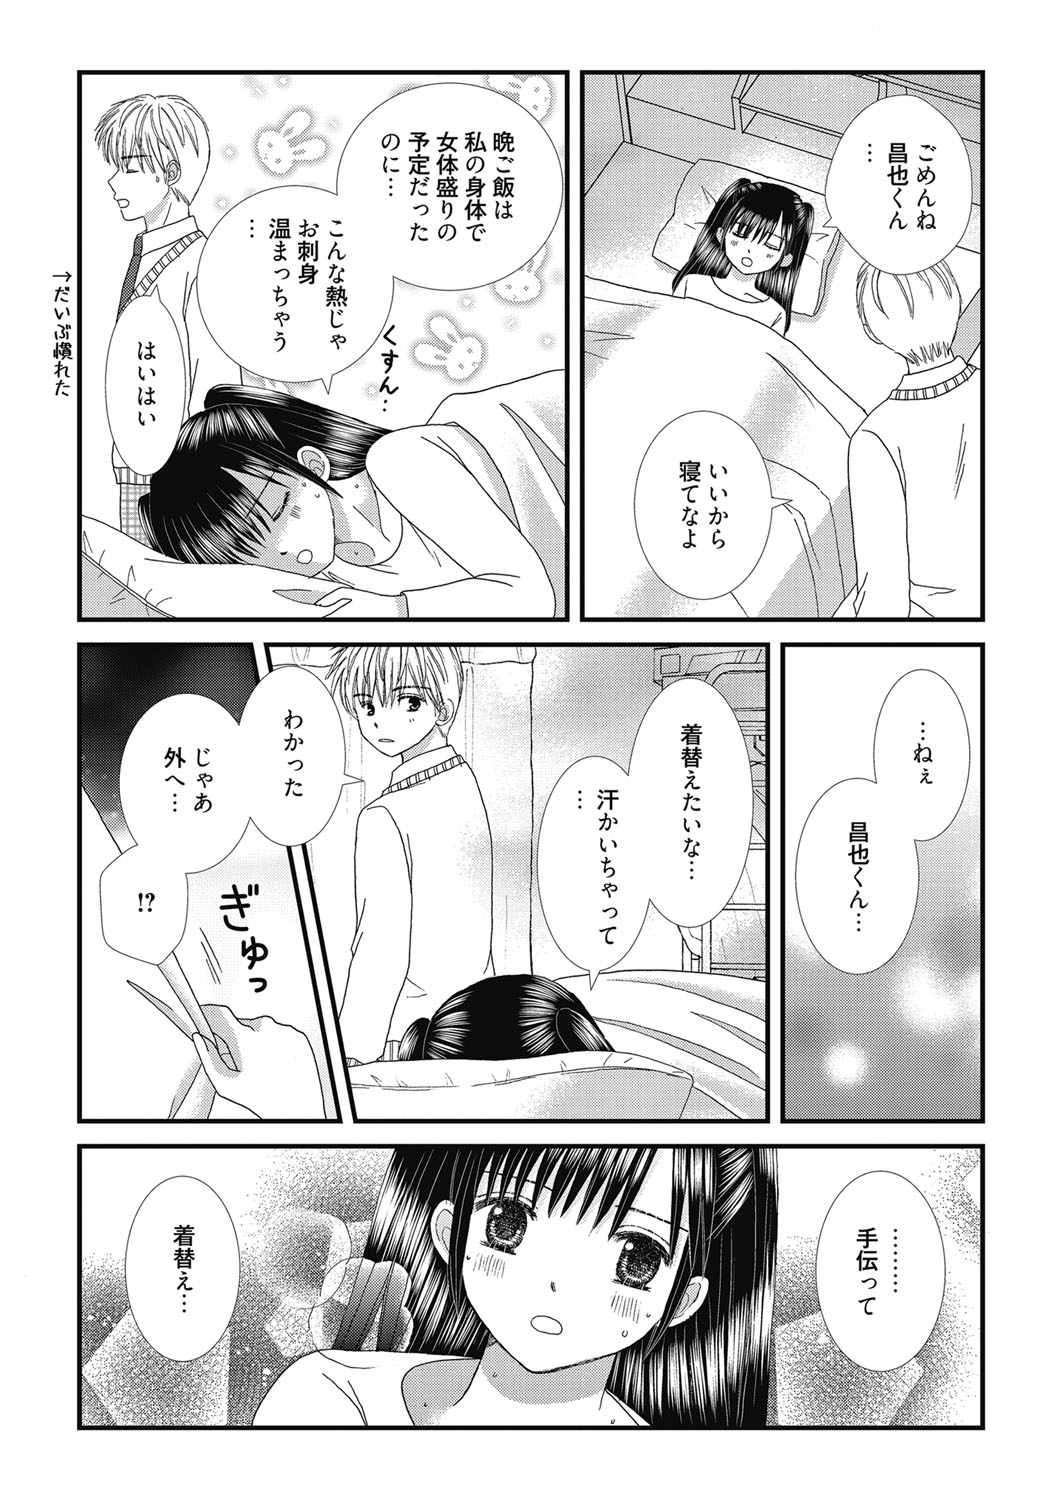 Web Manga Bangaichi Vol. 27 web 漫画ばんがいち Vol.27